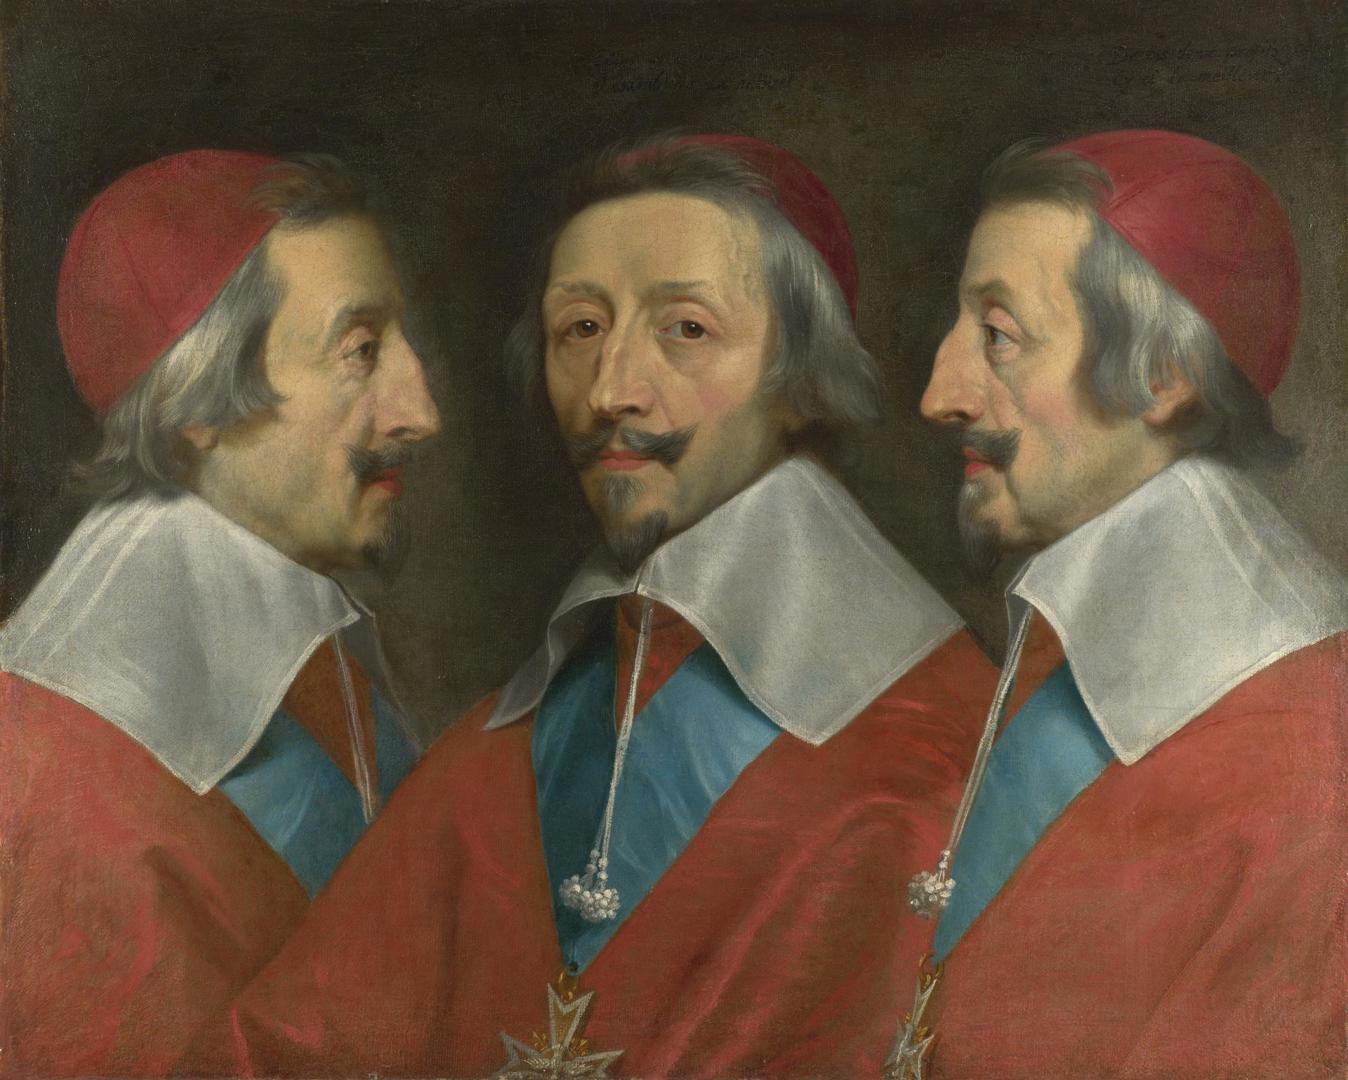 Triple Portrait of Cardinal de Richelieu by Philippe de Champaigne and studio